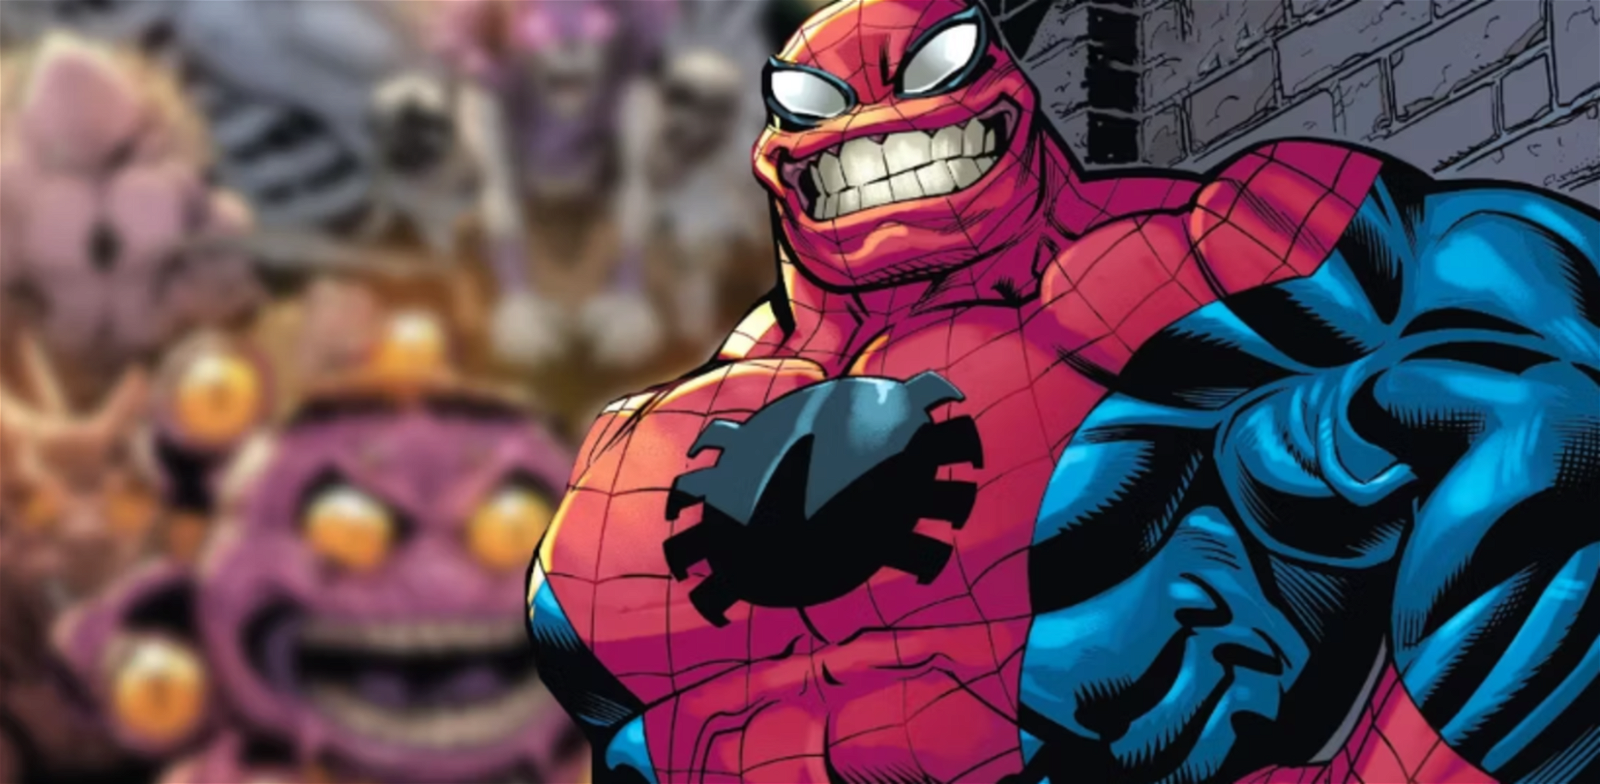 Spider-Man se convierte en una mezcla increíble de magia y simbiontes